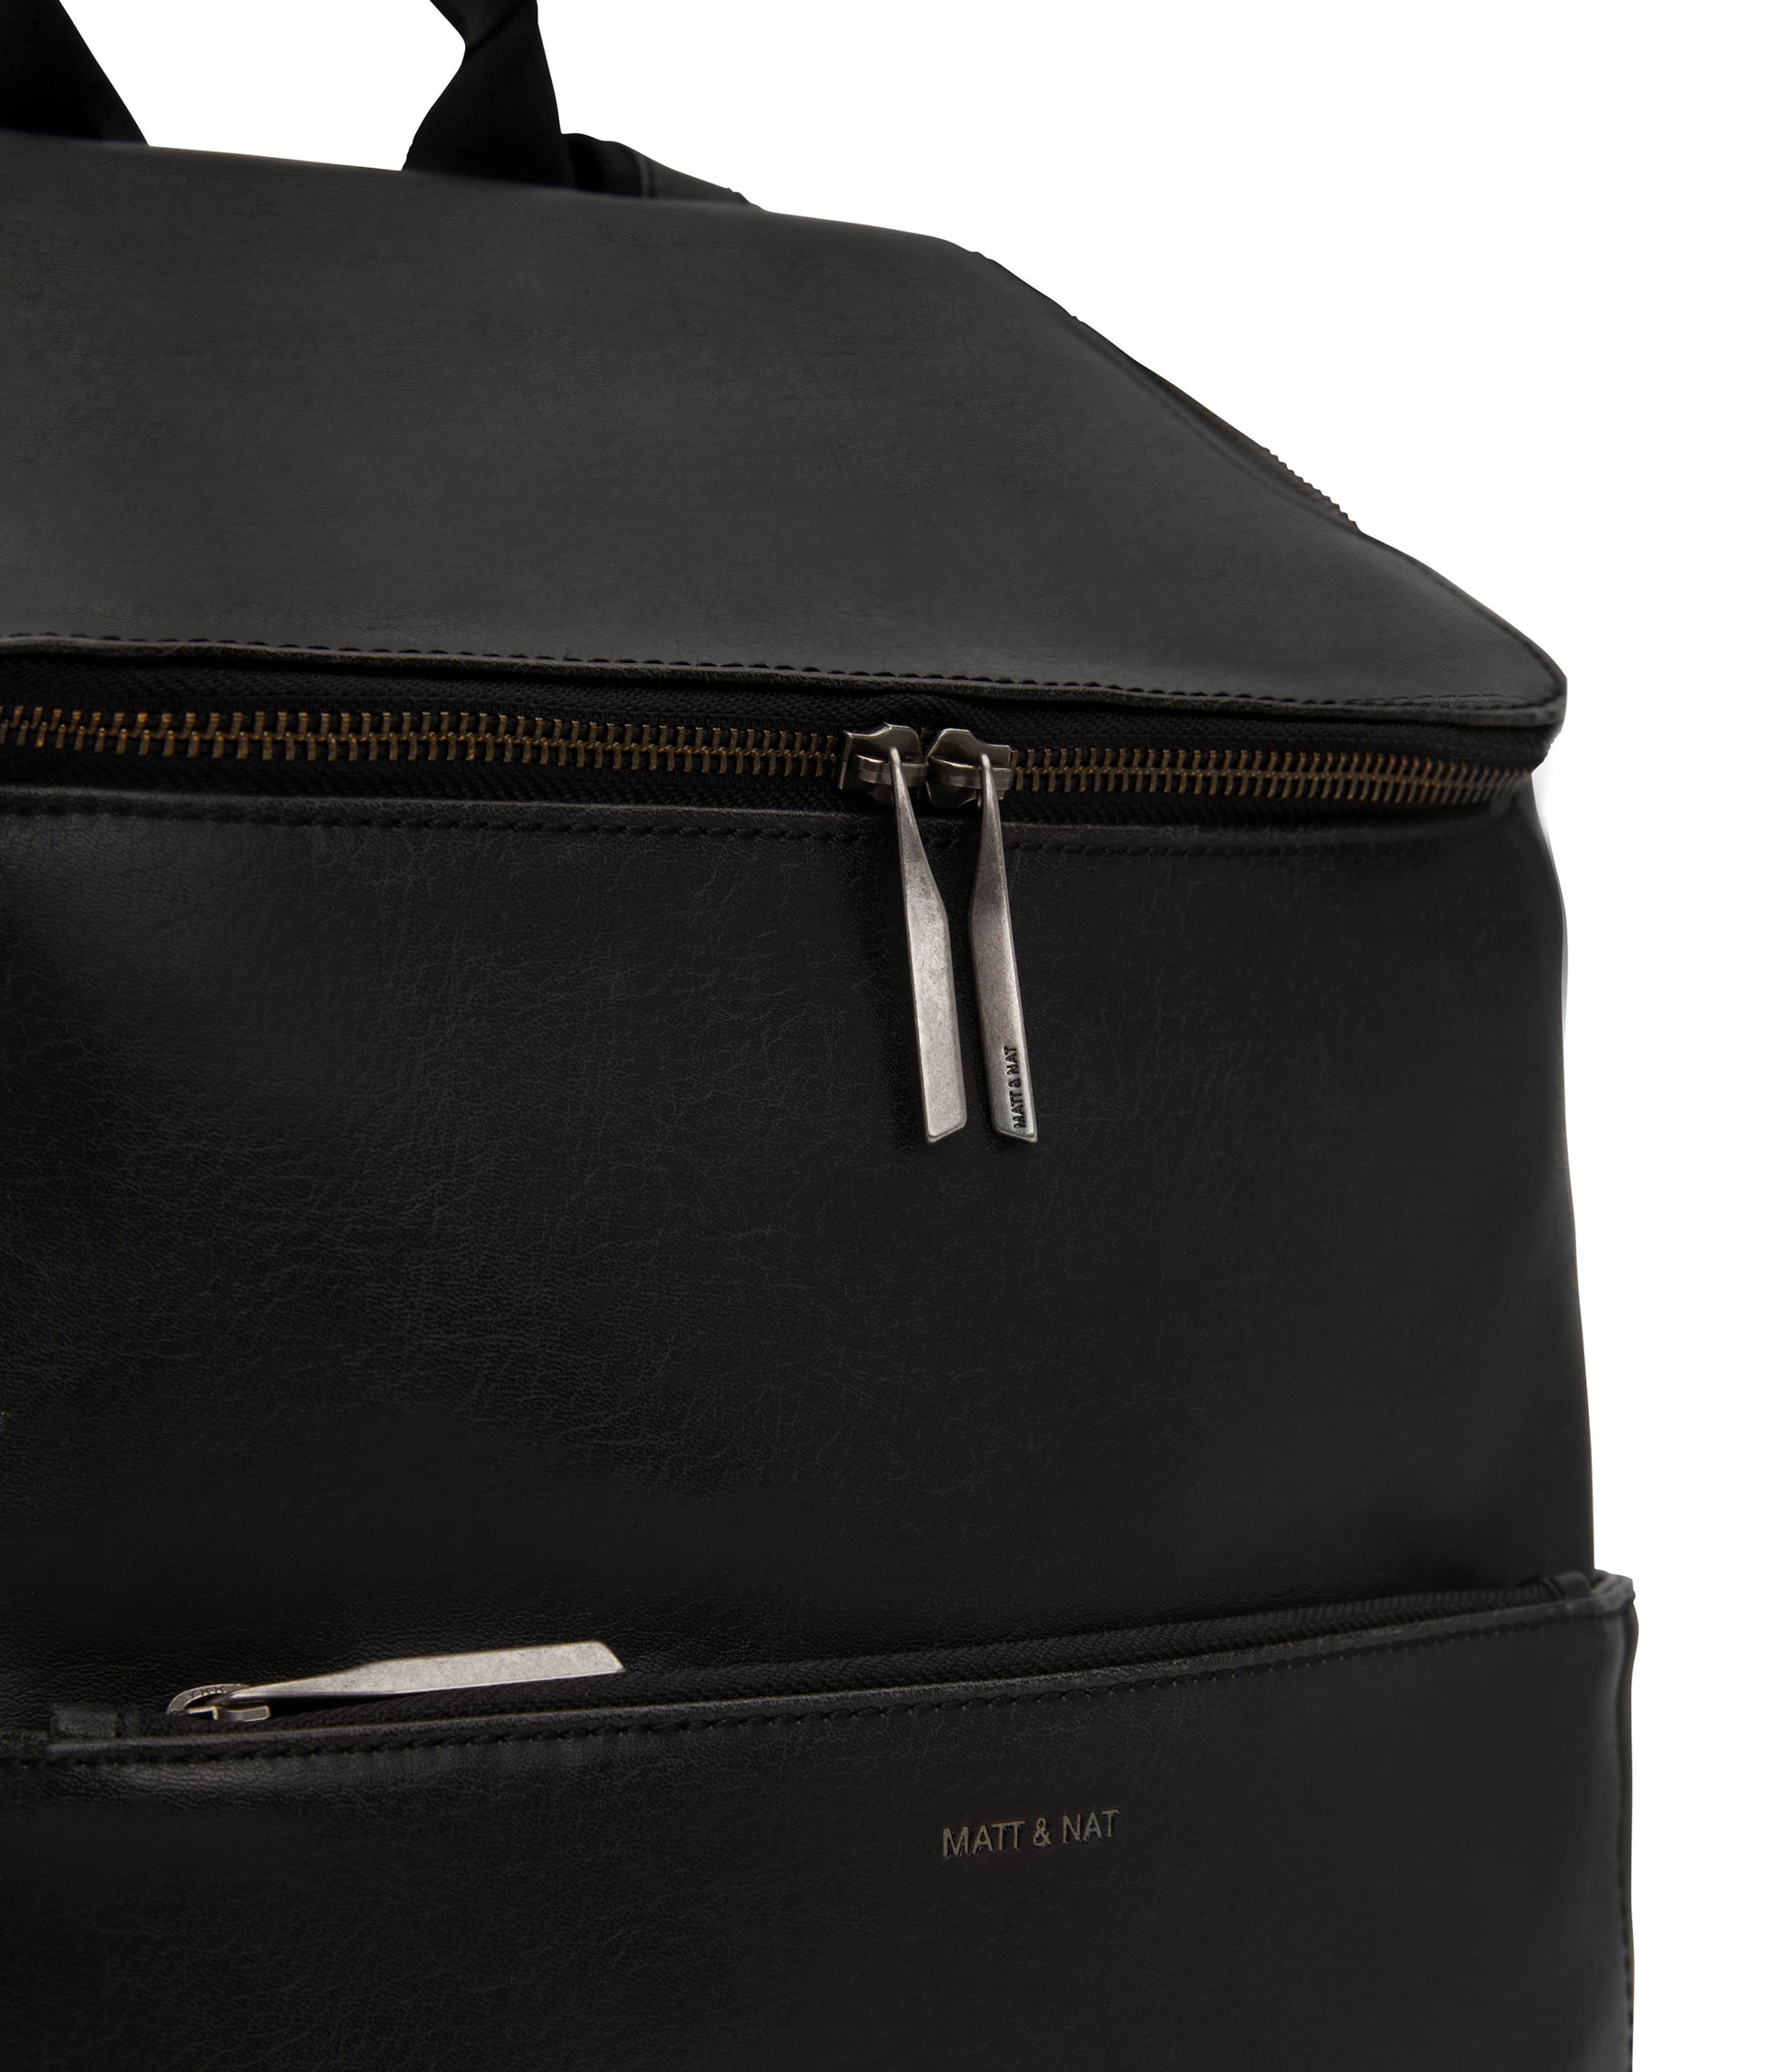 DEAN Vegan Backpack - Vintage | Color: Black - variant::black